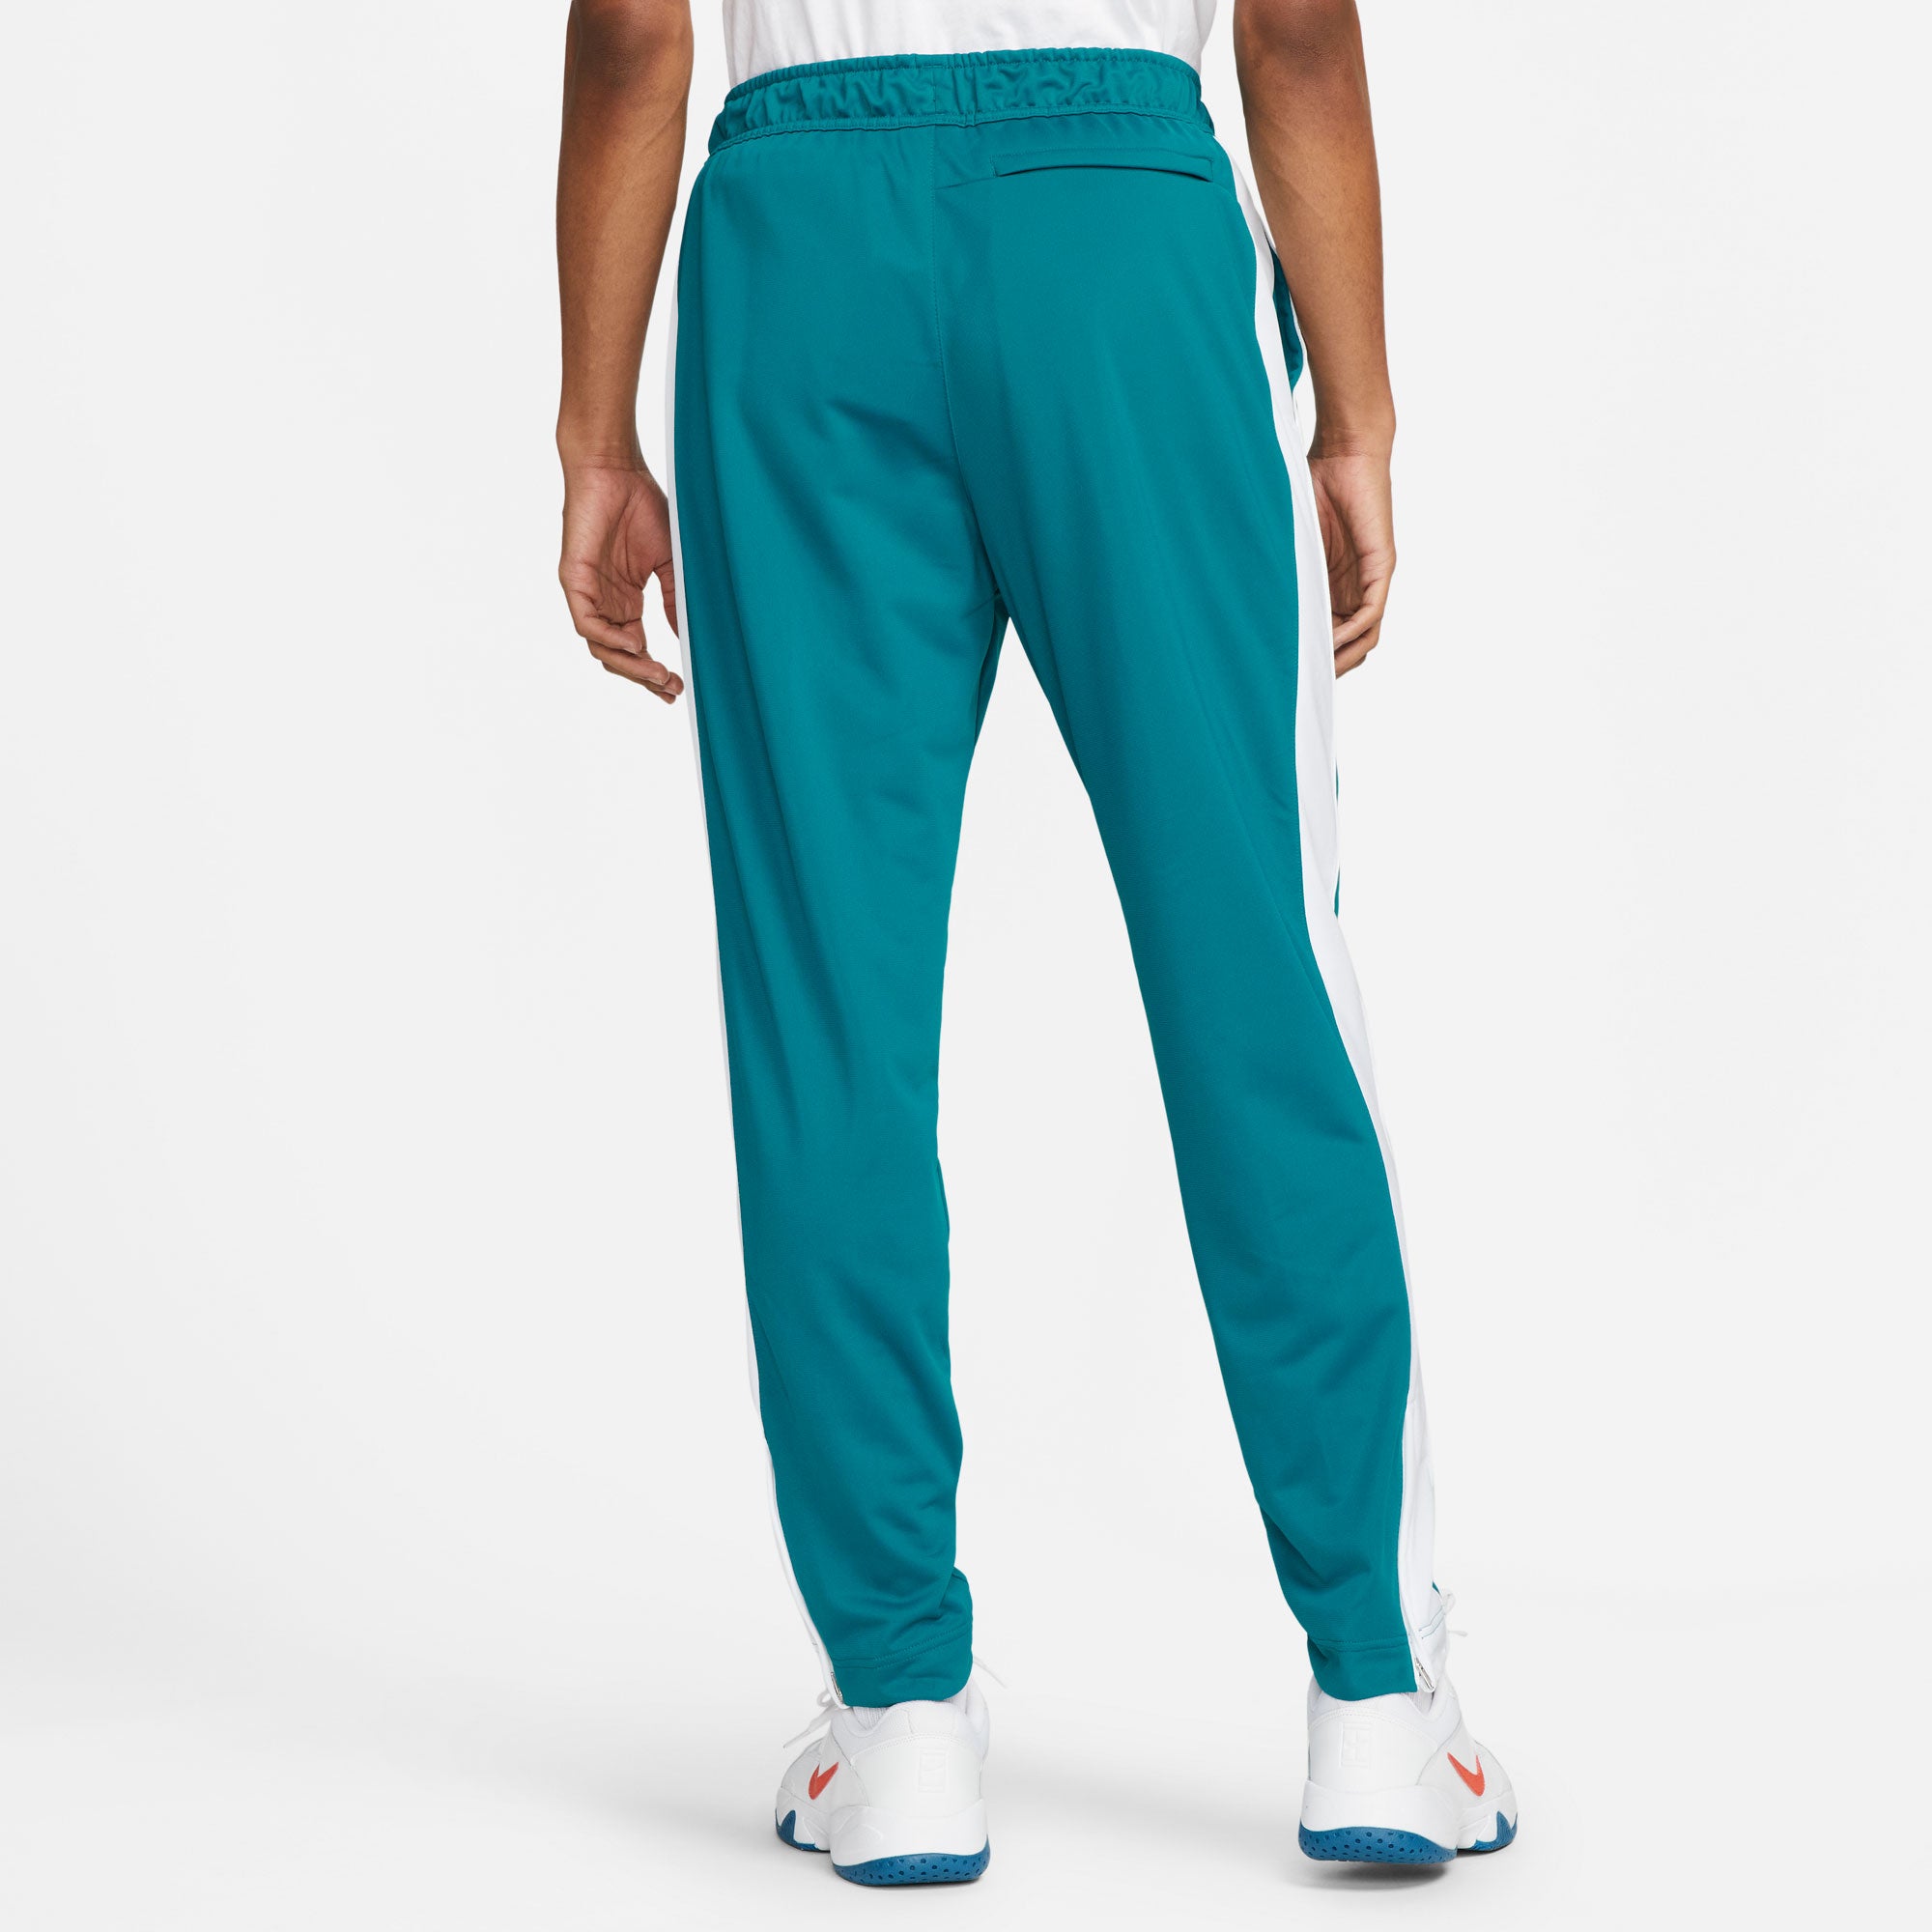 NikeCourt Heritage Men's Tennis Pants Green (2)